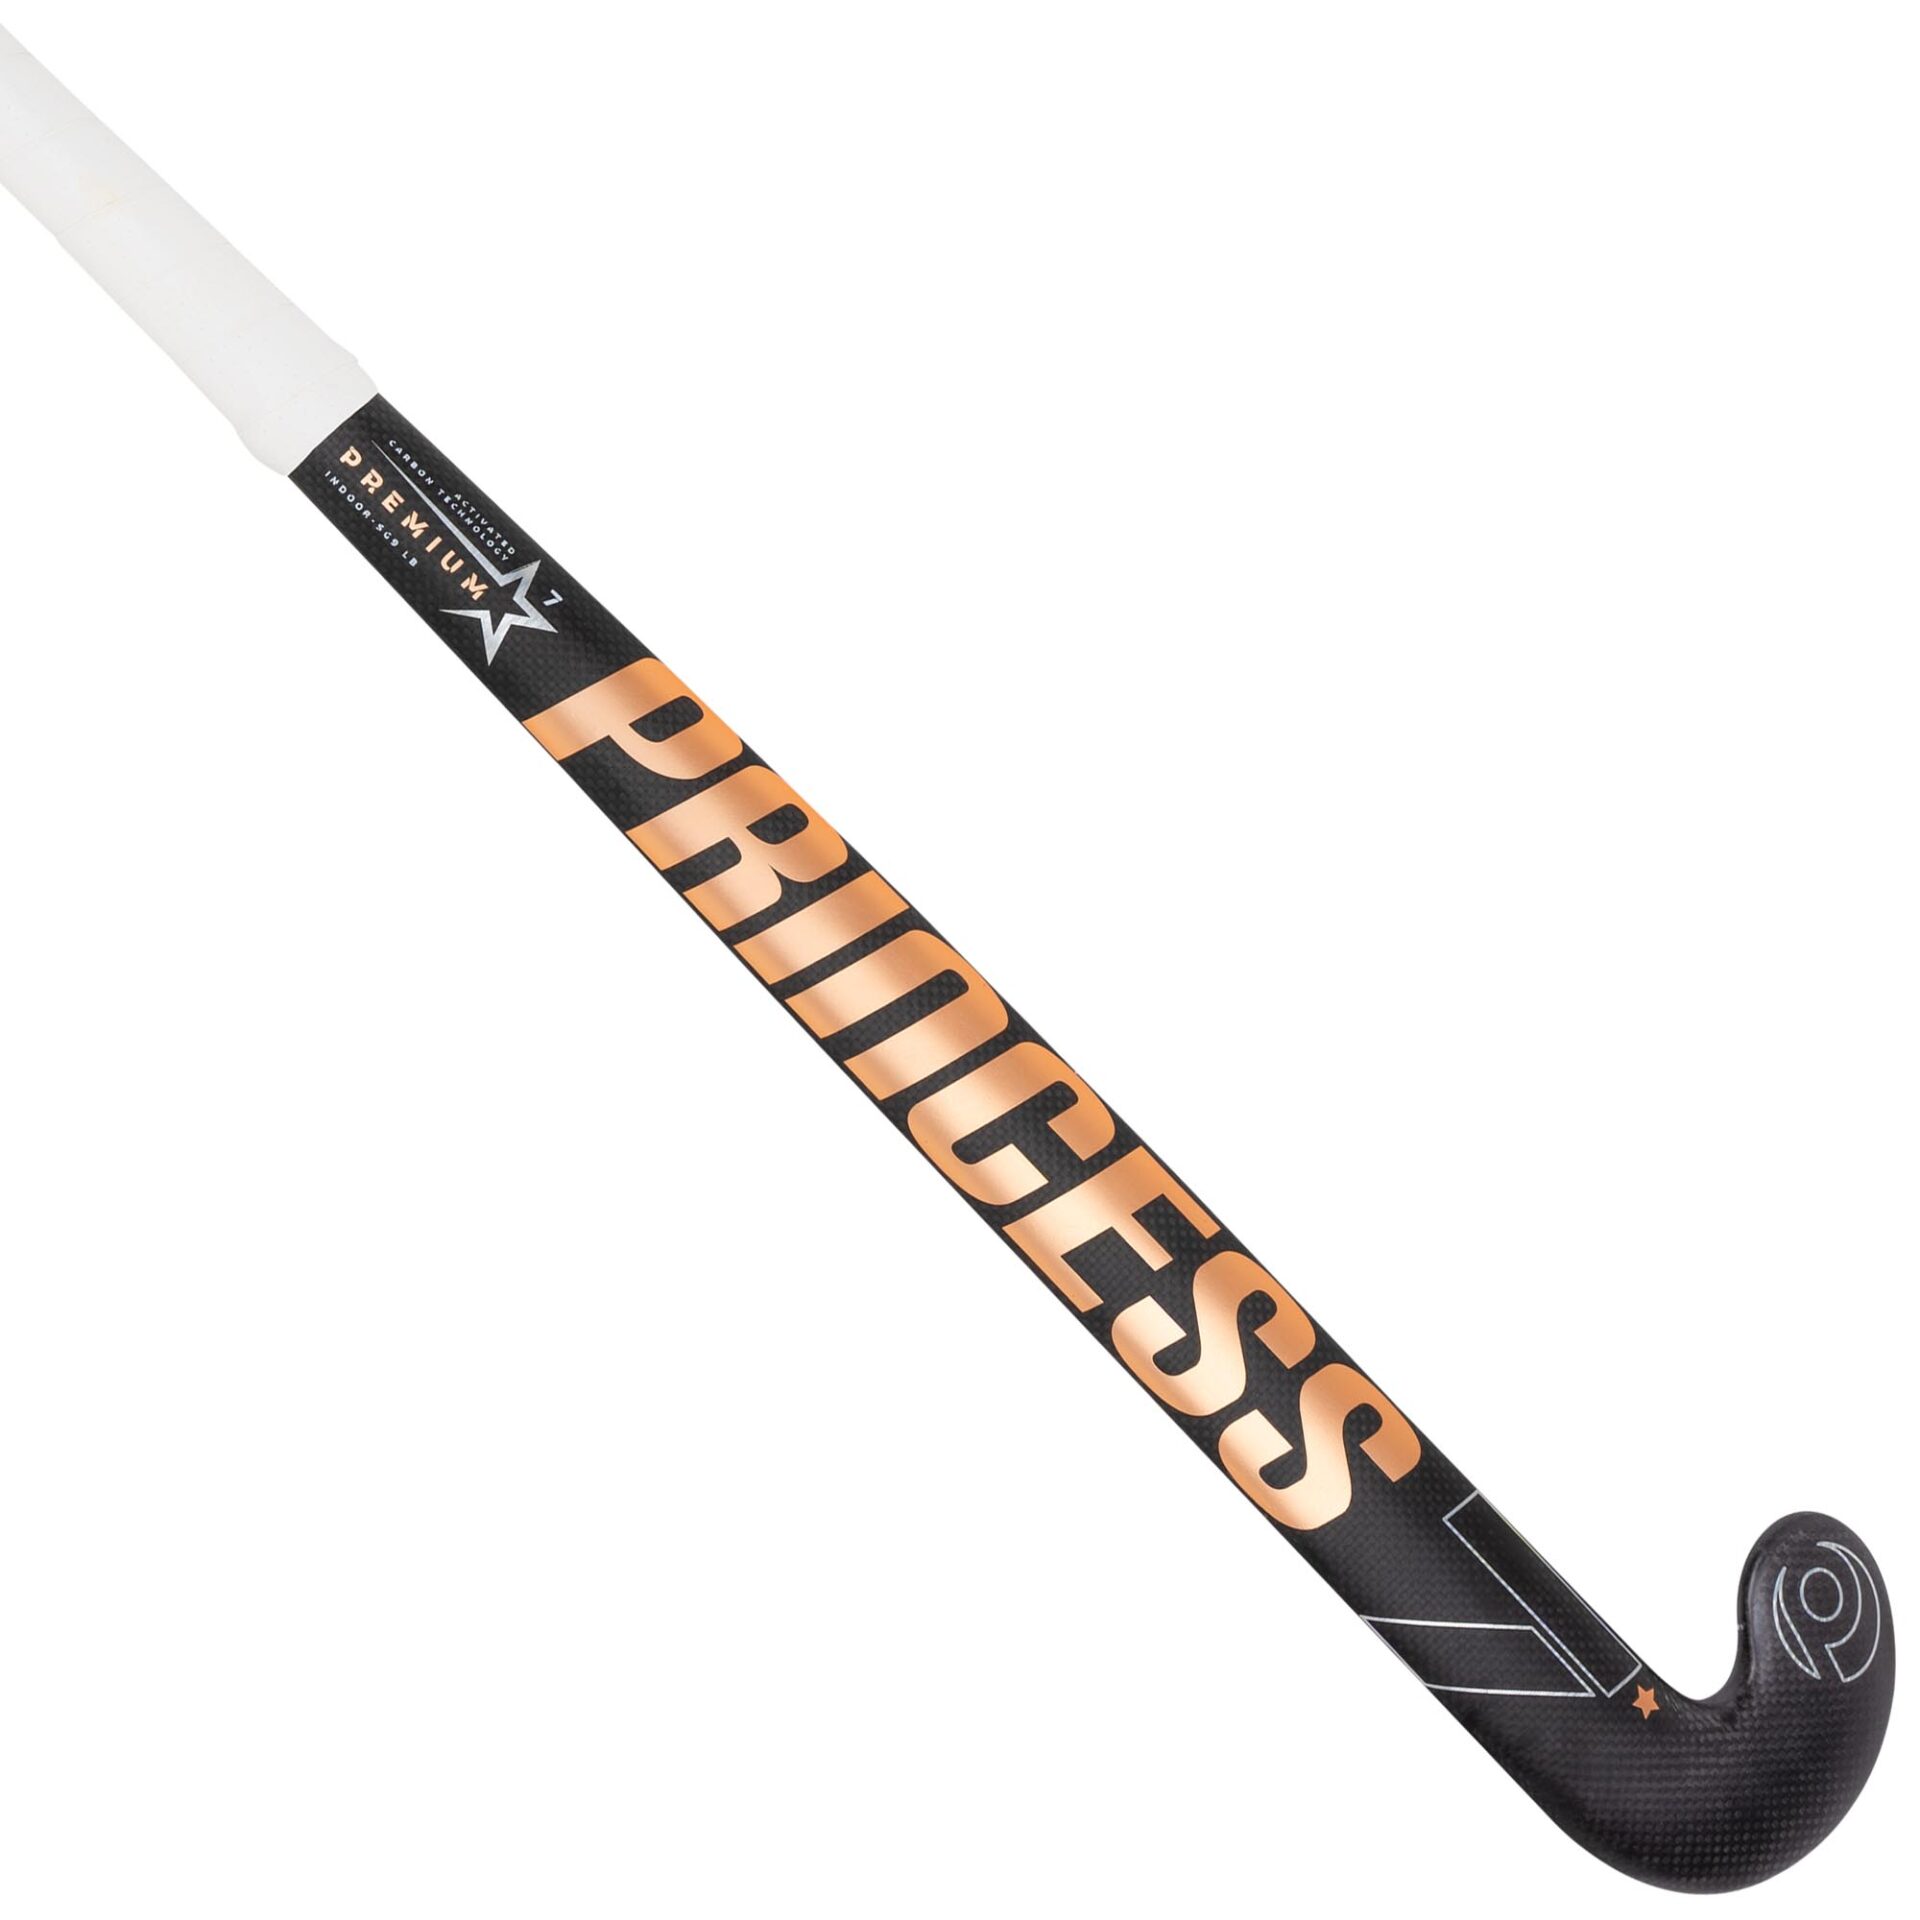 PRINCESS 7 STAR SG9 Composite Field Hockey Stick with free bag & grip 37.5 